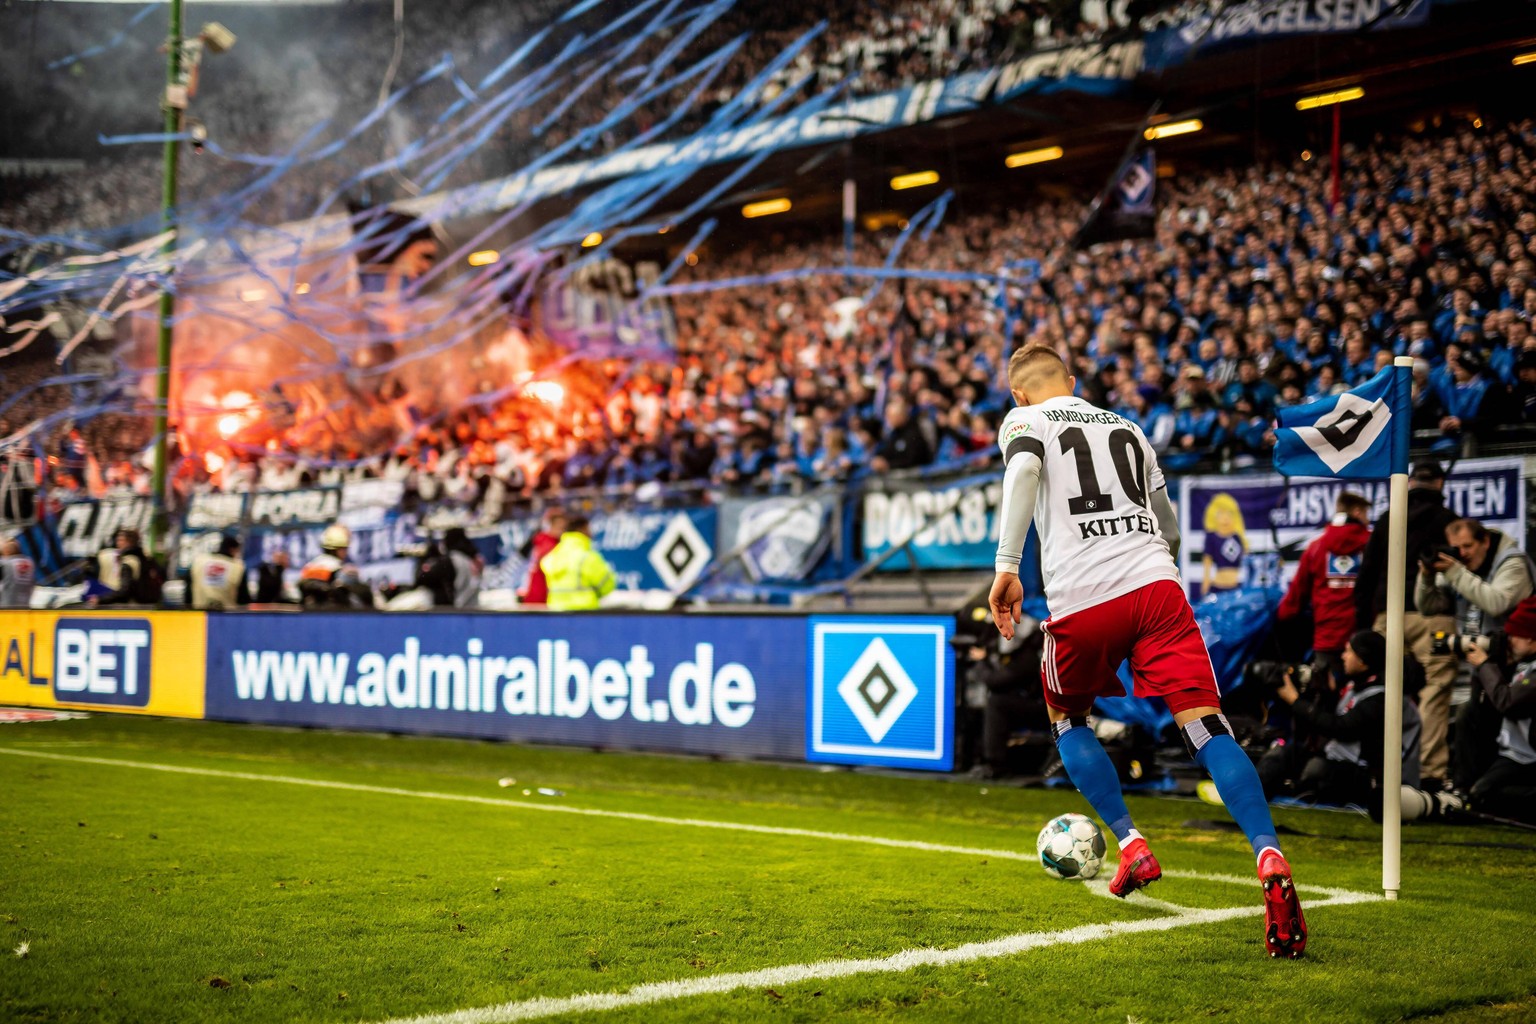 Fußball und erhitzte Stimmung gehören zu Derbys dazu. So wie hier beim Hamburg-Derby zwischen dem HSV und St. Pauli im Februar 2020.